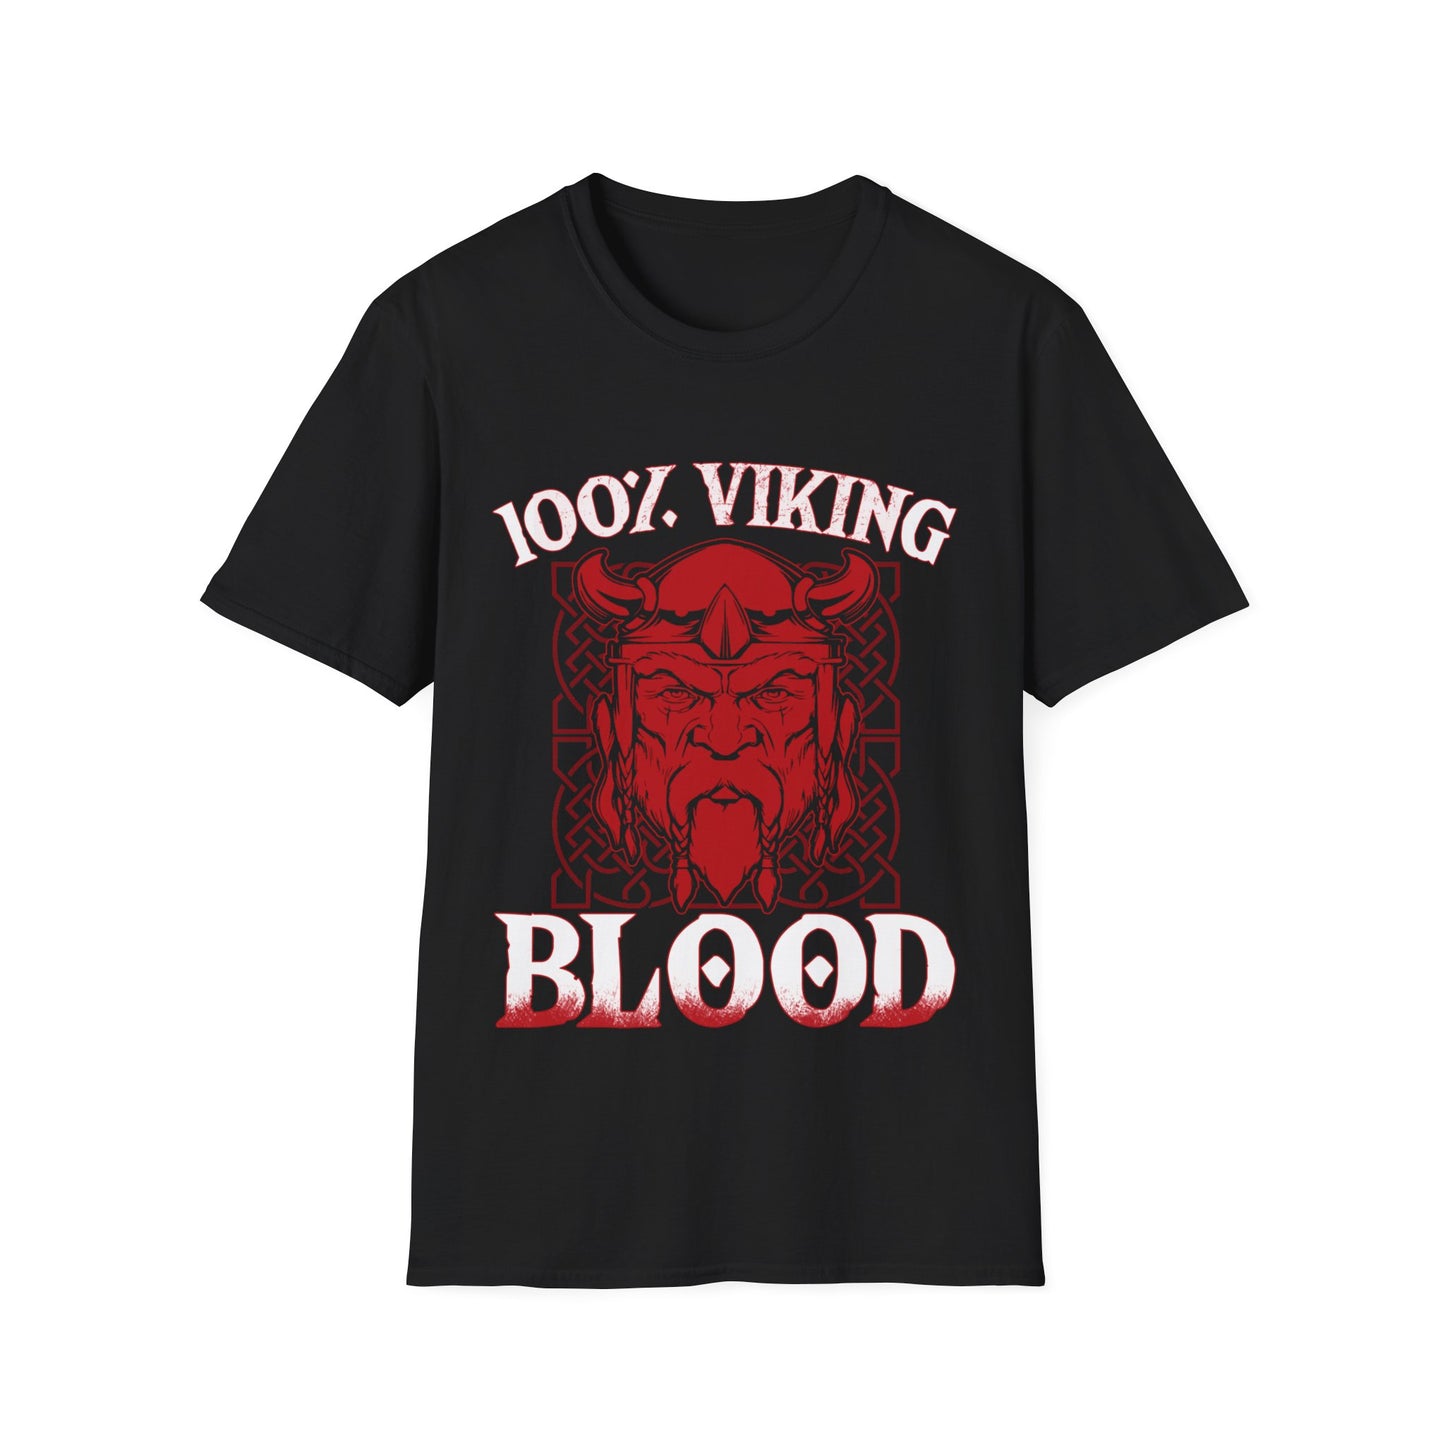 100% Viking Blood T-Shirt